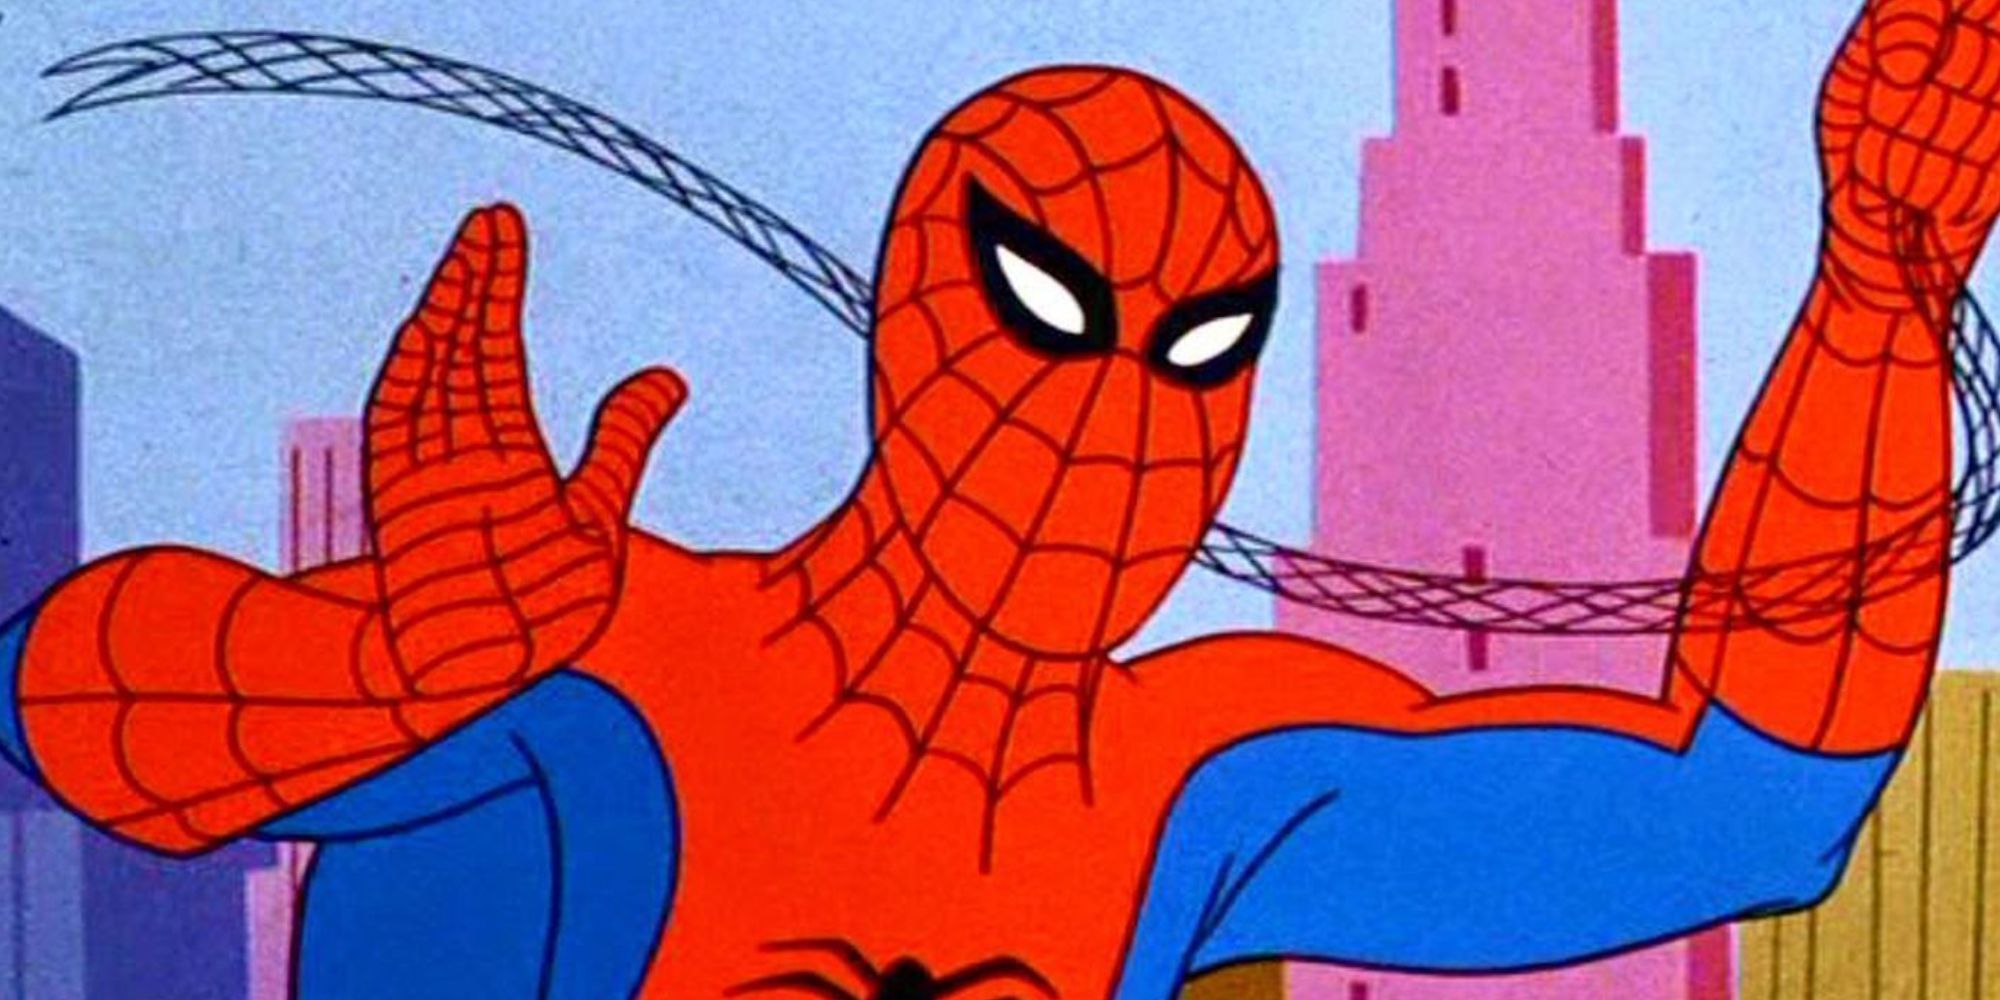 Spider-Man swinging through New York in the 1960s Spider-Man cartoon